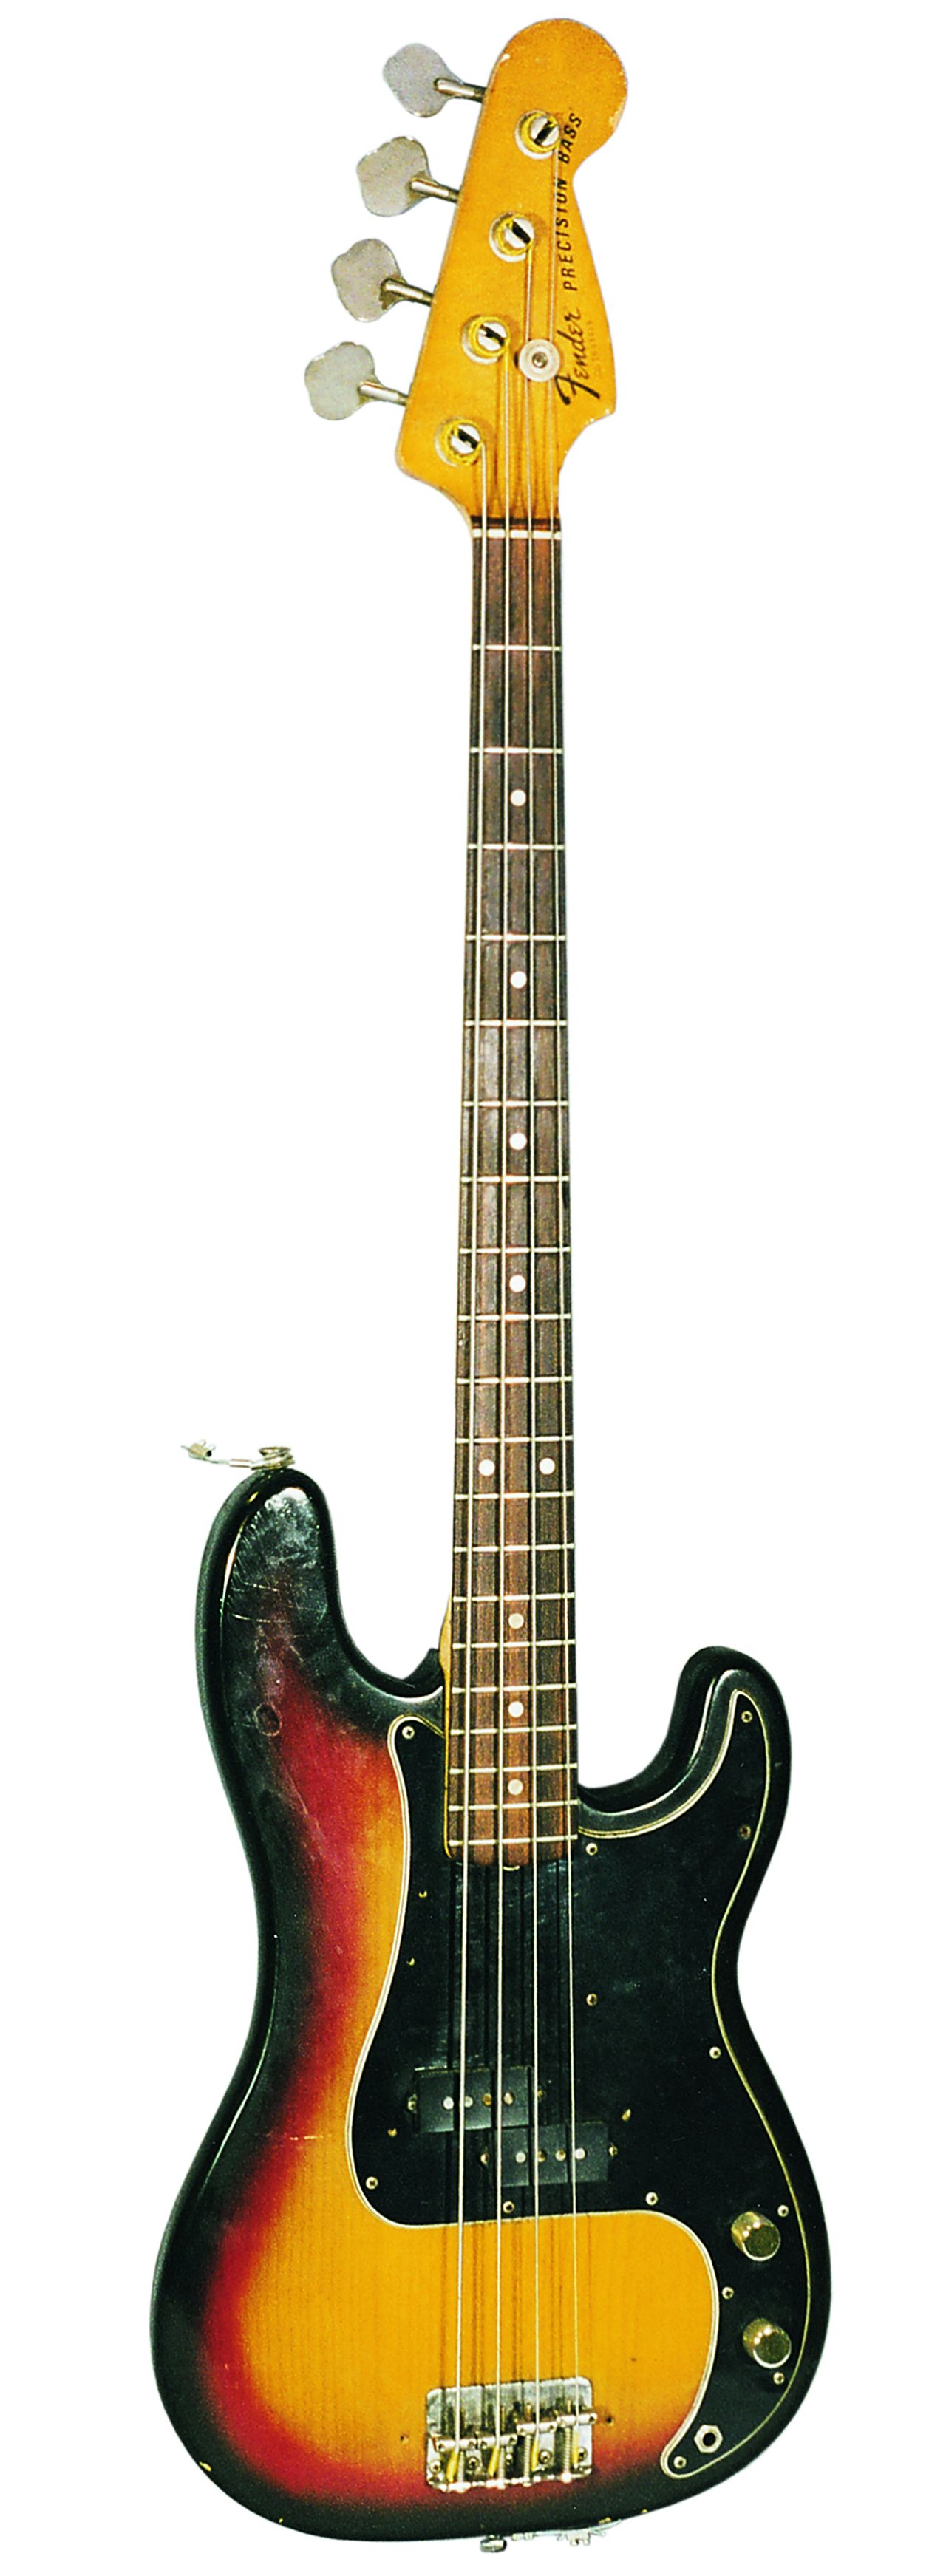 4-saitige E-Bass-Gitarre aus Holz und Metall in den Farben Braun, Rot und Beige der Marke Fender Precission Bass, USA.